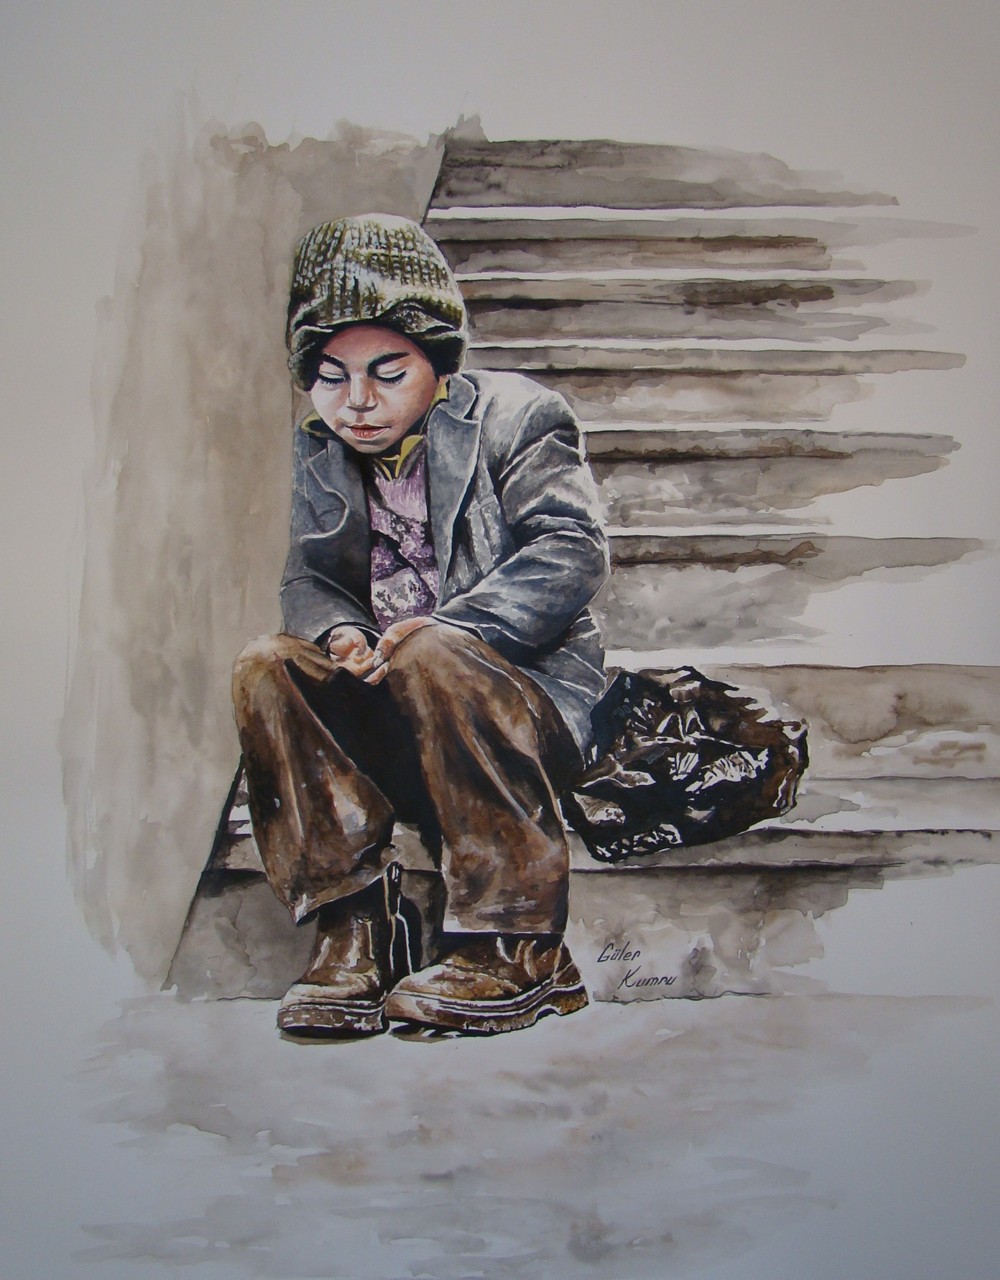 L'enfant au pied de l'escalier